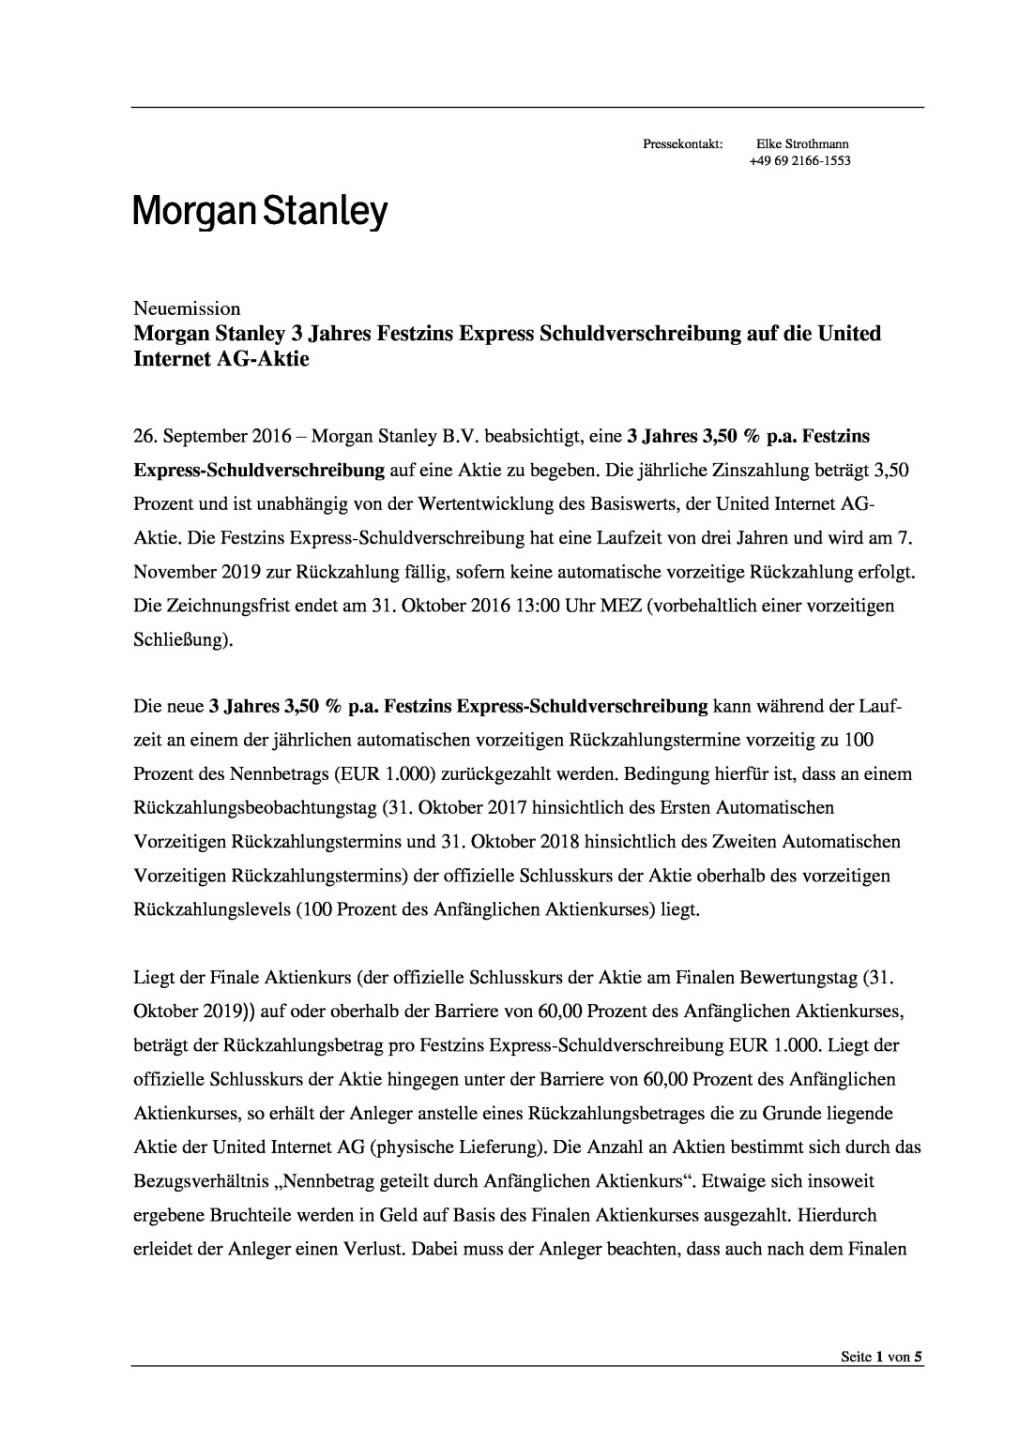 Morgan Stanley 3 Jahres Festzins Express Schuldverschreibung auf die United Internet AG-Aktie, Seite 1/5, komplettes Dokument unter http://boerse-social.com/static/uploads/file_1831_morgan_stanley_3_jahres_festzins_express_schuldverschreibung_auf_die_united_internet_ag-aktie.pdf